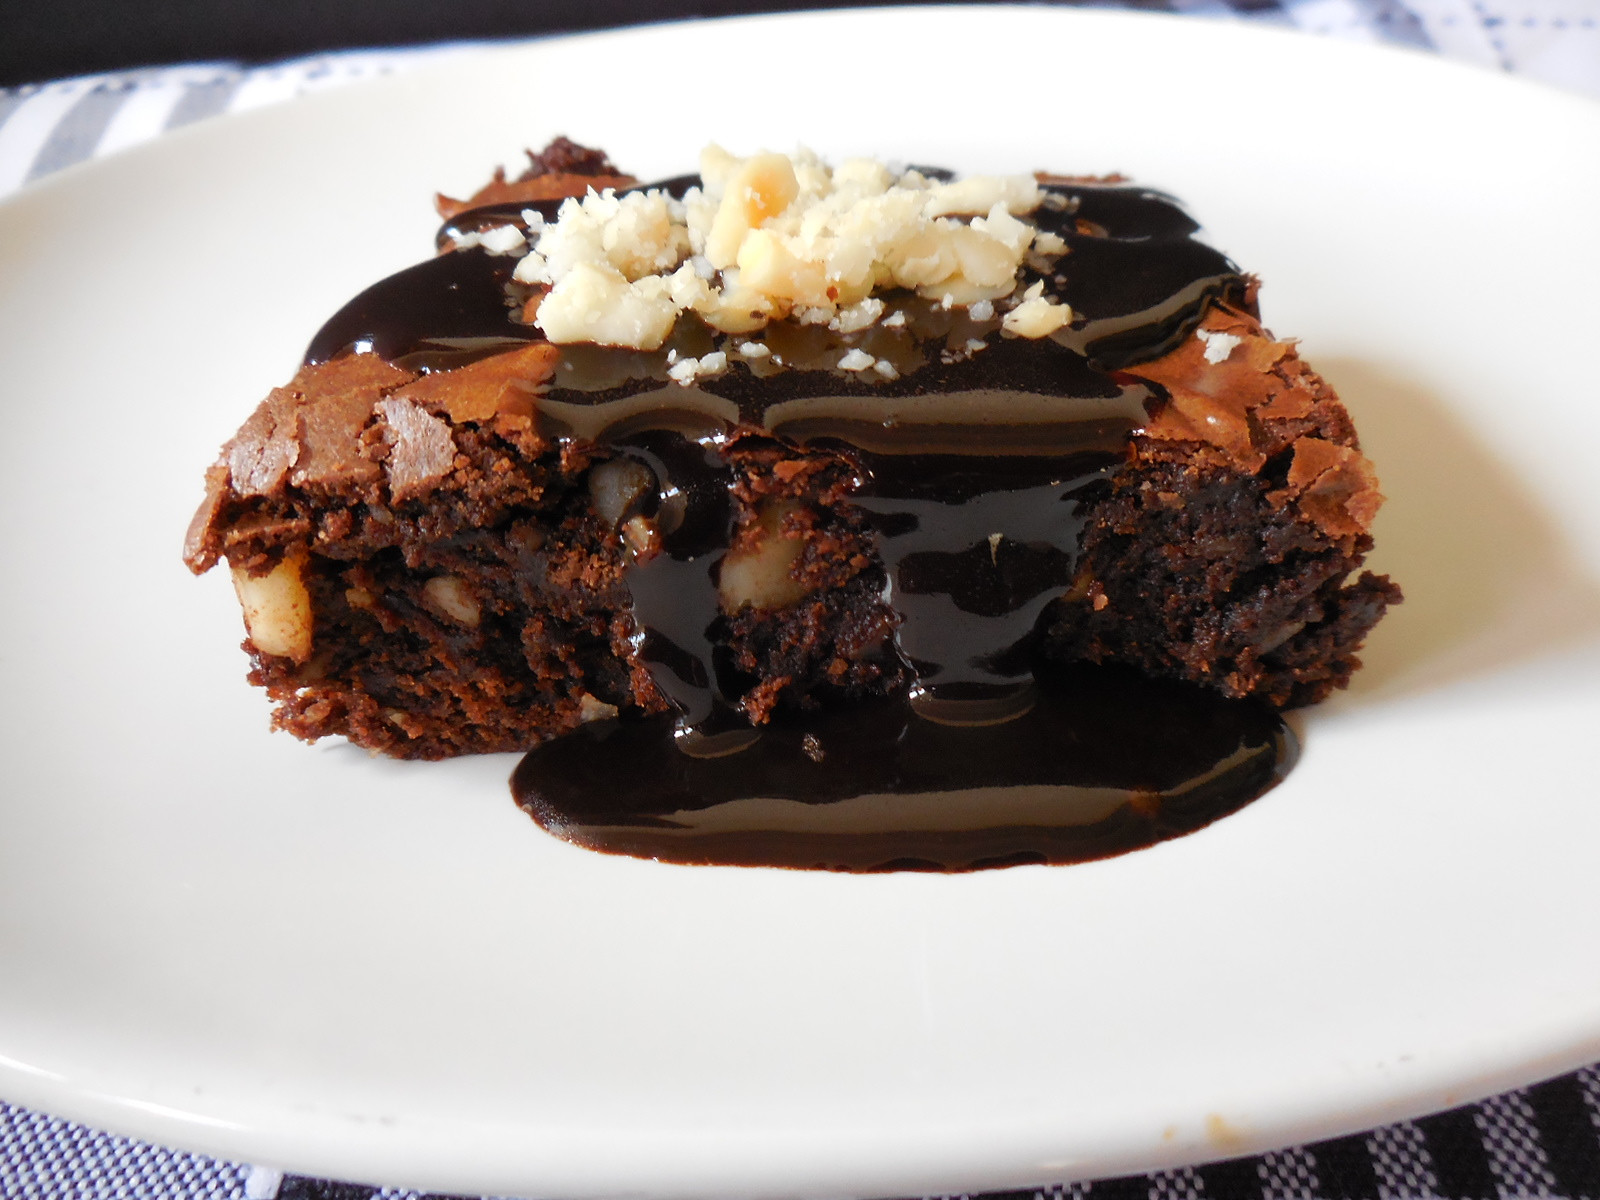 Brownie de Chocolate com Castanha-do-Pará